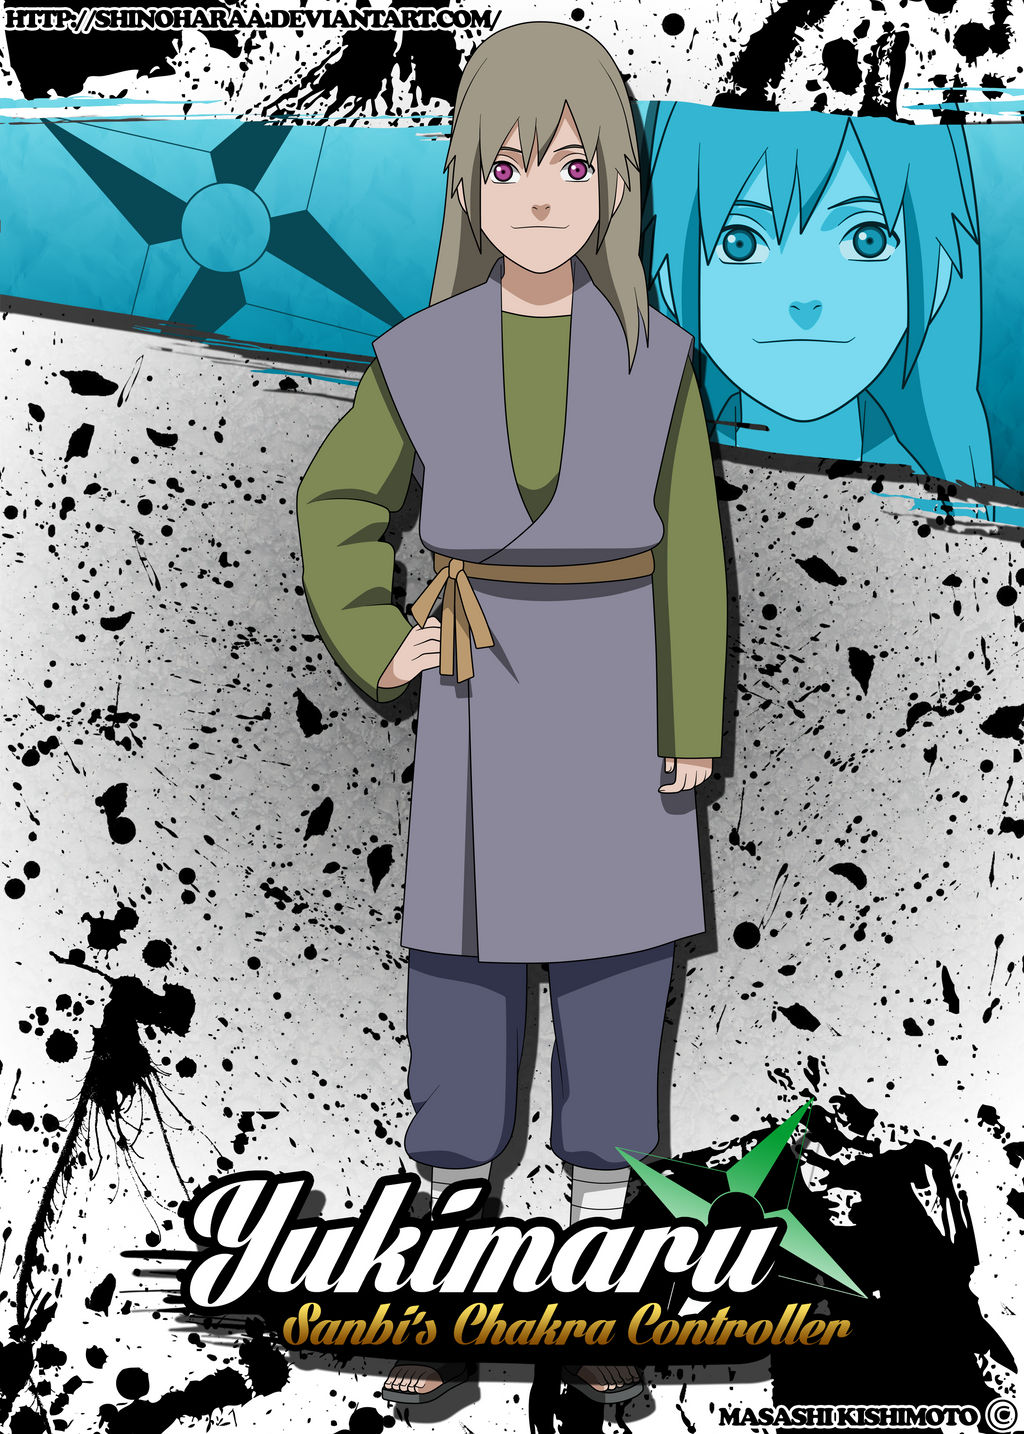 Yukimaro  Naruto Shippuden Online Amino